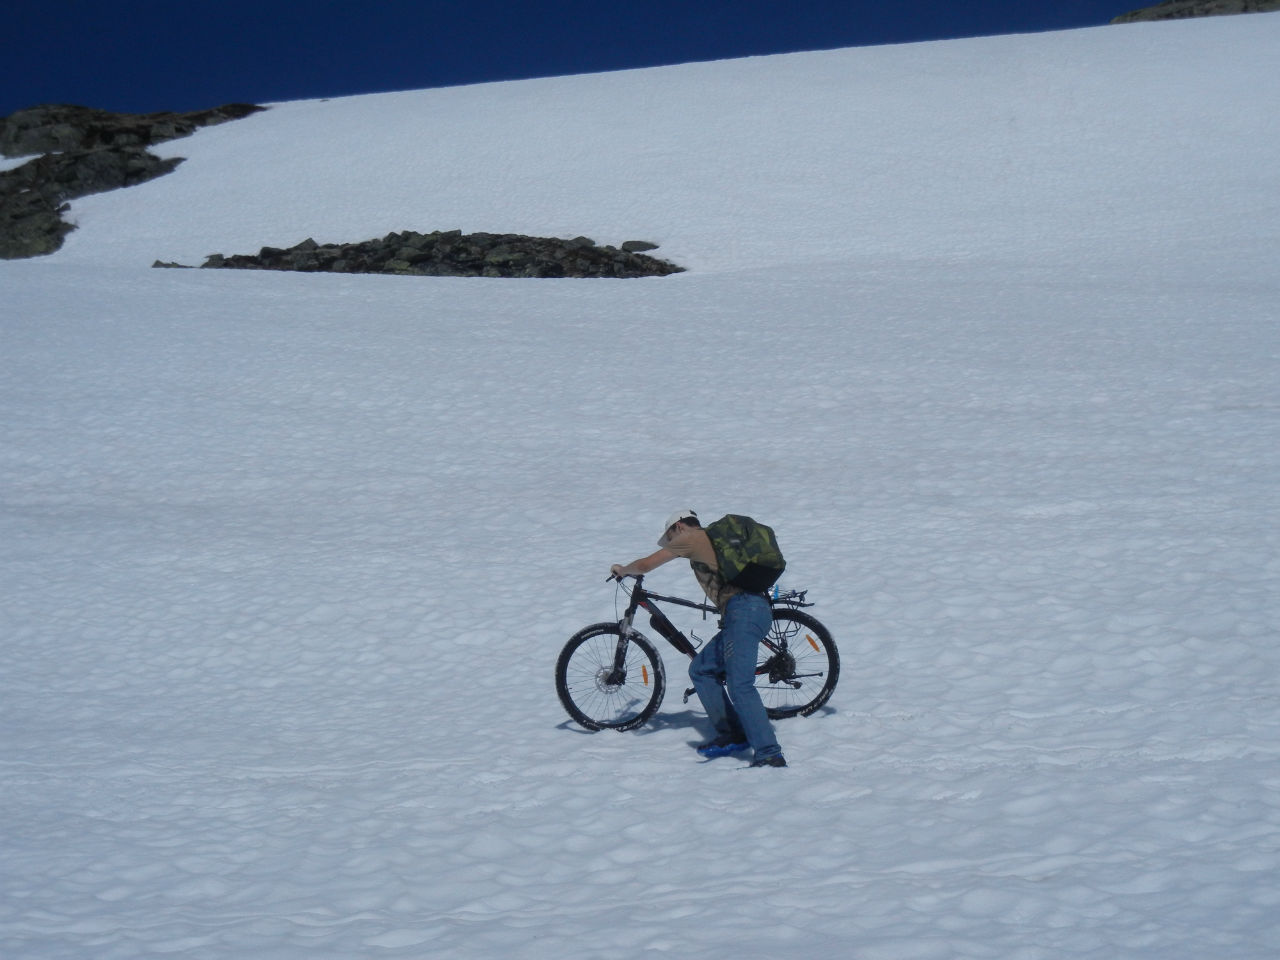 Солнце на спицах, синева над головой...   зай-зай-зай. Таких велопоходов сына еще не видел. Финсе, Норвегия